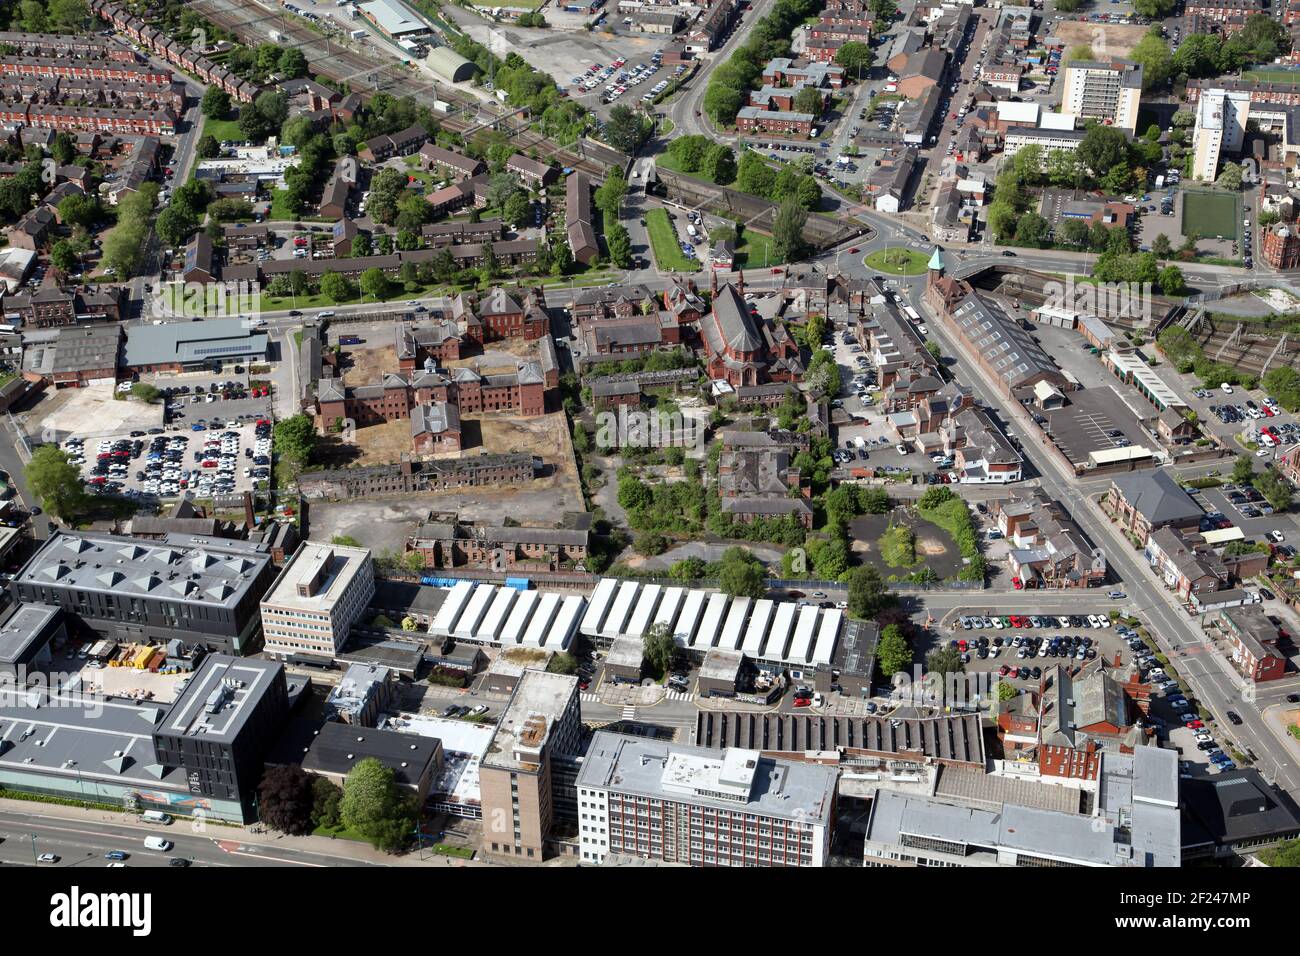 Vista aerea dall'est dell'area tra Wellington Road South e Shaw Heath a Stockport, Greater Manchester. Compreso Stockport College. Foto Stock